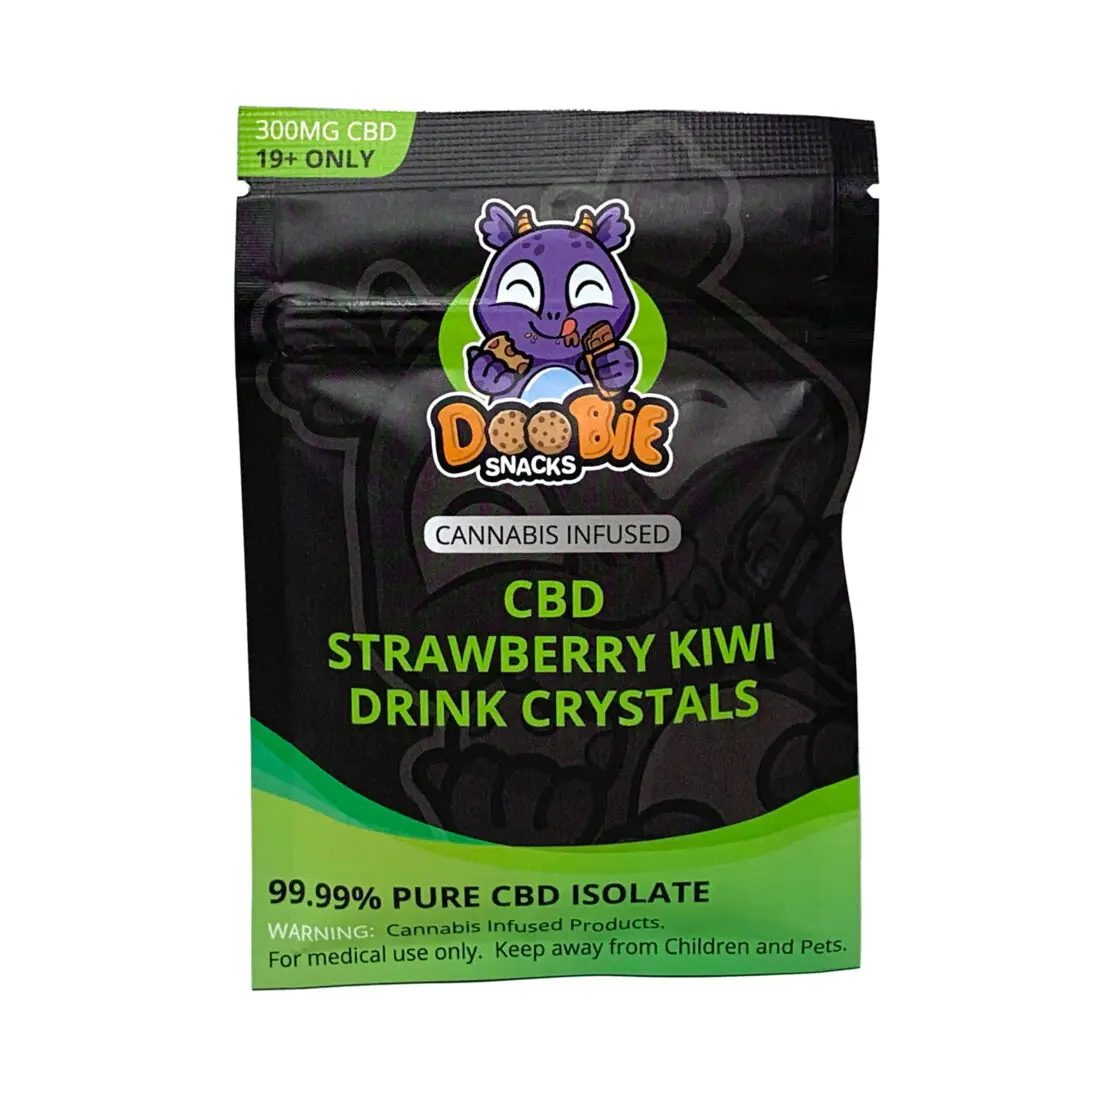 Doobie Snacks – Cbd Strawberry Kiwi Drink Crystals